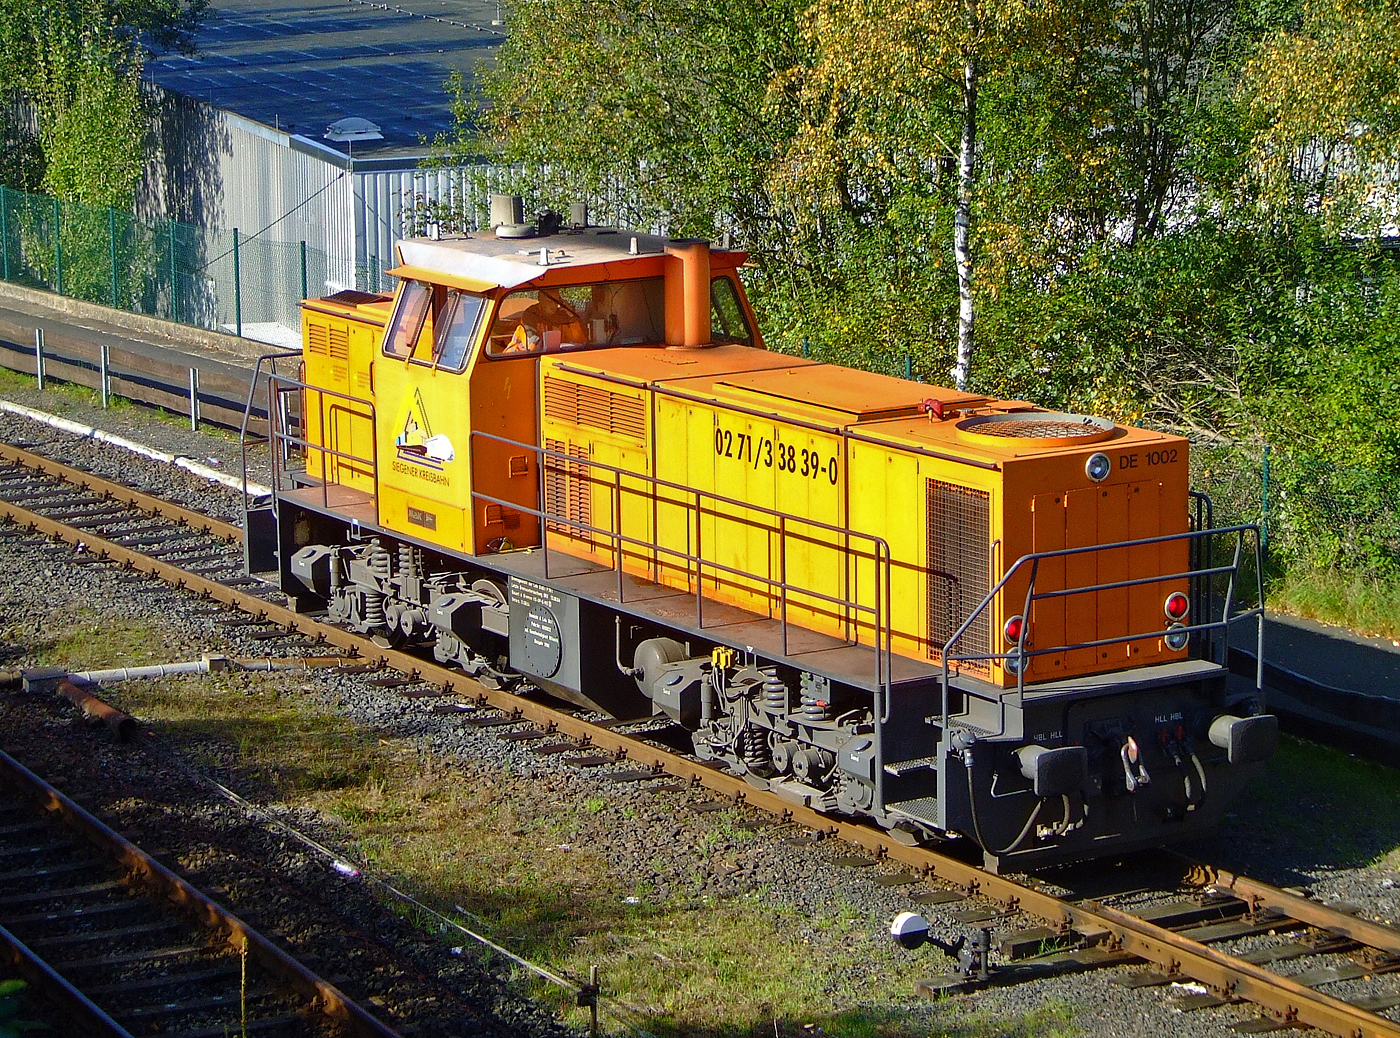 Die KSW 41 bzw. 272 008-0 (98 80 0272 008-0 D-KSW) der Kreisbahn Siegen-Wittgenstein (KSW) am 06.10.2007 in Herdorf.

Die dieselelektrische DE 1002 wurde 1988 bei MaK unter der Fabriknummer 1000832 gebaut und an die HEG - Hersfelder Eisenbahn GmbH als 832 geliefert. Nach Einstellung des Bahnbetriebes der HEG ging sie konzernintern an die HLB - Hessische Landesbahn GmbH Lok 832 und 1996 wurde sie an die frhere Siegener Kreisbahn GmbH als Lok 41 verkauft, die heute als Kreisbahn Siegen-Wittgenstein firmiert. Im Jahr 2017 wurde die Lok an NOBEG Reinold Eisenbahndienstleistungen (Furth im Wald) verkauft.

Gegenber den 16 Loks dieses Typs der HGK (mit MWM-Motor) hat diese Lok einen V 12-Zylinder-Dieselmotor mit Abgasturbolader und Ladekhlung vom Typ MTU 12V396TC13 Dieselmotor mit 1.120 kW (1.523 PS) Leistung. Die Leistungsbertragung erfolgt dieselelektrisch, das heit der Dieselmotor treibt einen Generator an der die 4 Drehstrom-Fahrmotoren mit Strom speist. Der Generator und die Fahrmotoren sind von BBC (heute ABB).

TECHNISCHE DATEN :
Spurweite: 1.435 mm
Achsfolge: Bo´Bo´
Lnge ber Puffer: 13.000 mm
Drehzapfenabstand: 6.700 mm
Achsabstand im Drehgestell: 2.100
grte Breite: 3.100 mm
grte Hhe ber SOK: 4.220 mm
Raddurchmesser neu: 1.000 mm
kleinster befahrbarer Gleisbogen: 60 m
Dienstgewicht: 90 t
Motor: V-12-Zylinder-MTU-Dieselmotor vom Typ 12V396TC13
Motorleistung: 1.120 kW (1.523 PS)
Motornenndrehzahl: 1800 U/min
Kraftstoffvorrat: 2.900 l
Hchstgeschwindigkeit 75 km/h
